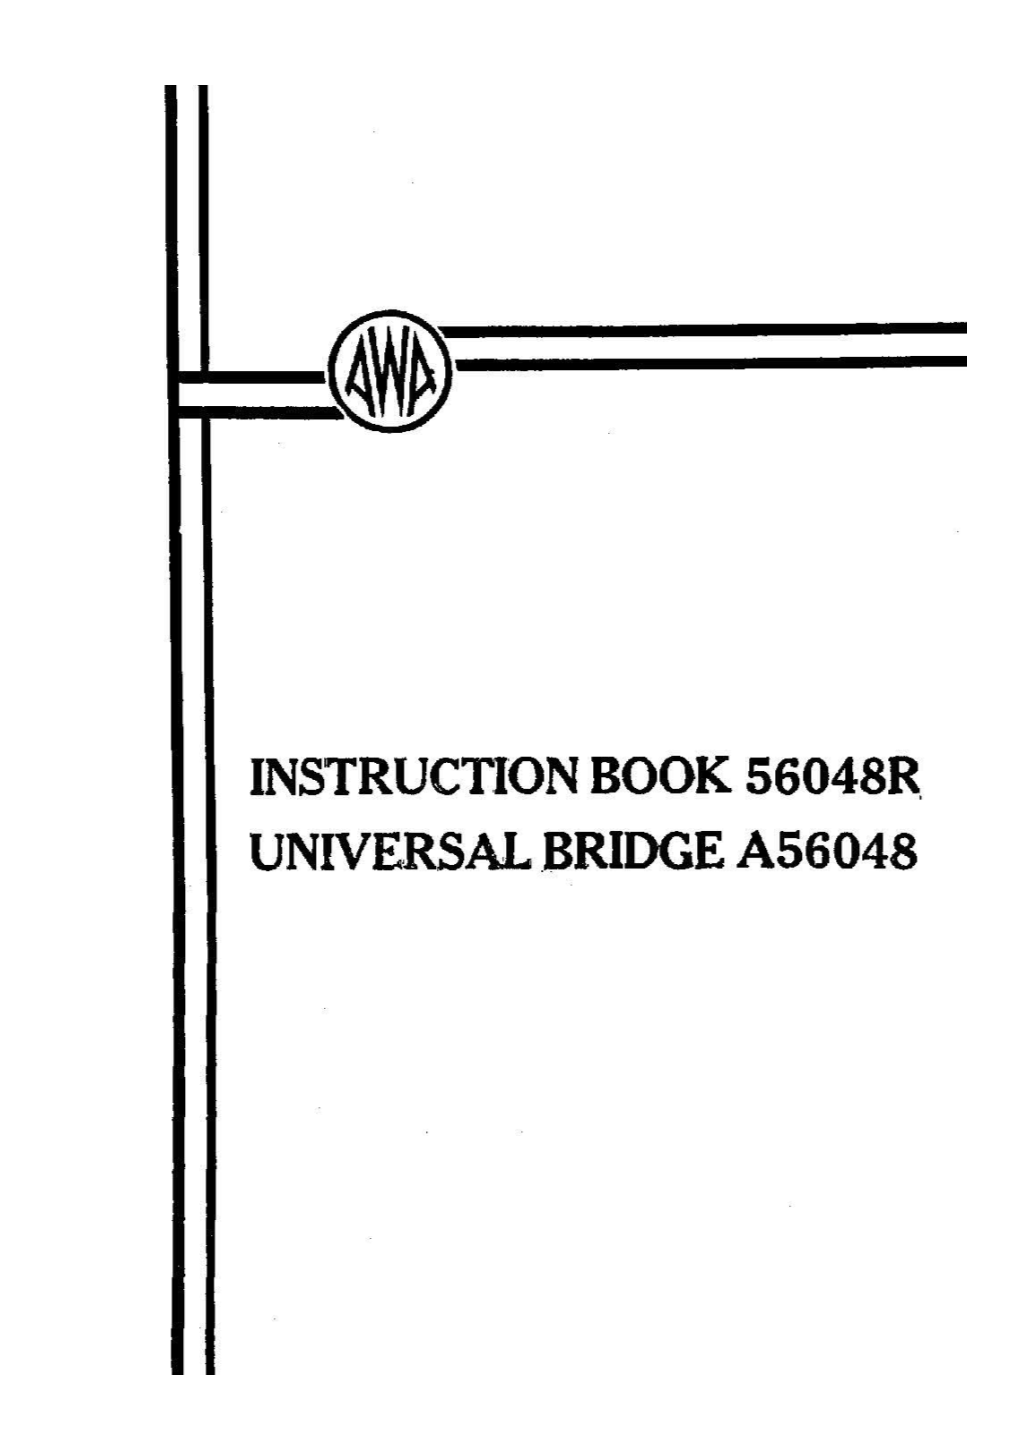 Instruction Book No. 56048R